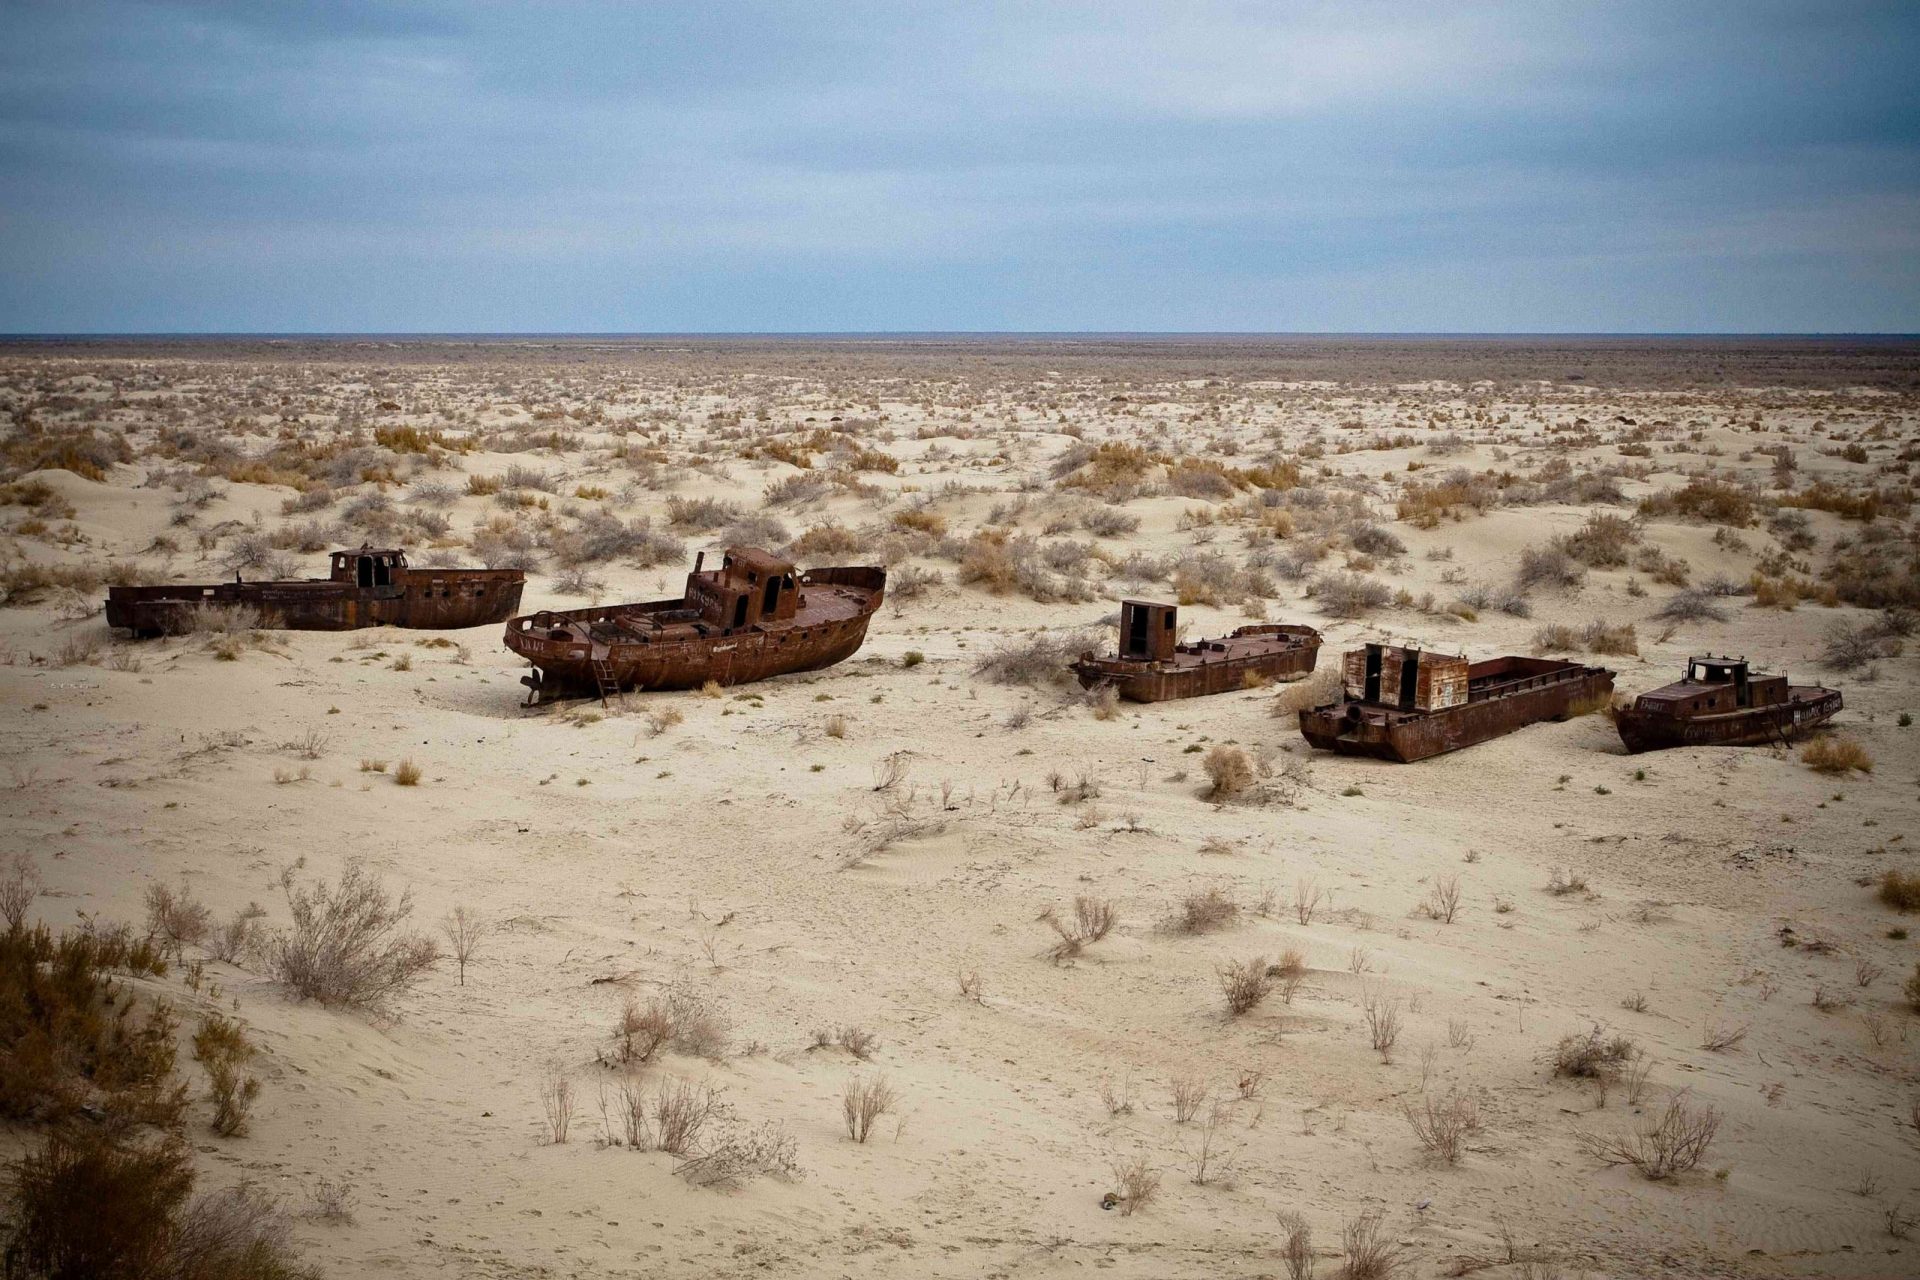 Barcos abandonados y oxidados en un desierto